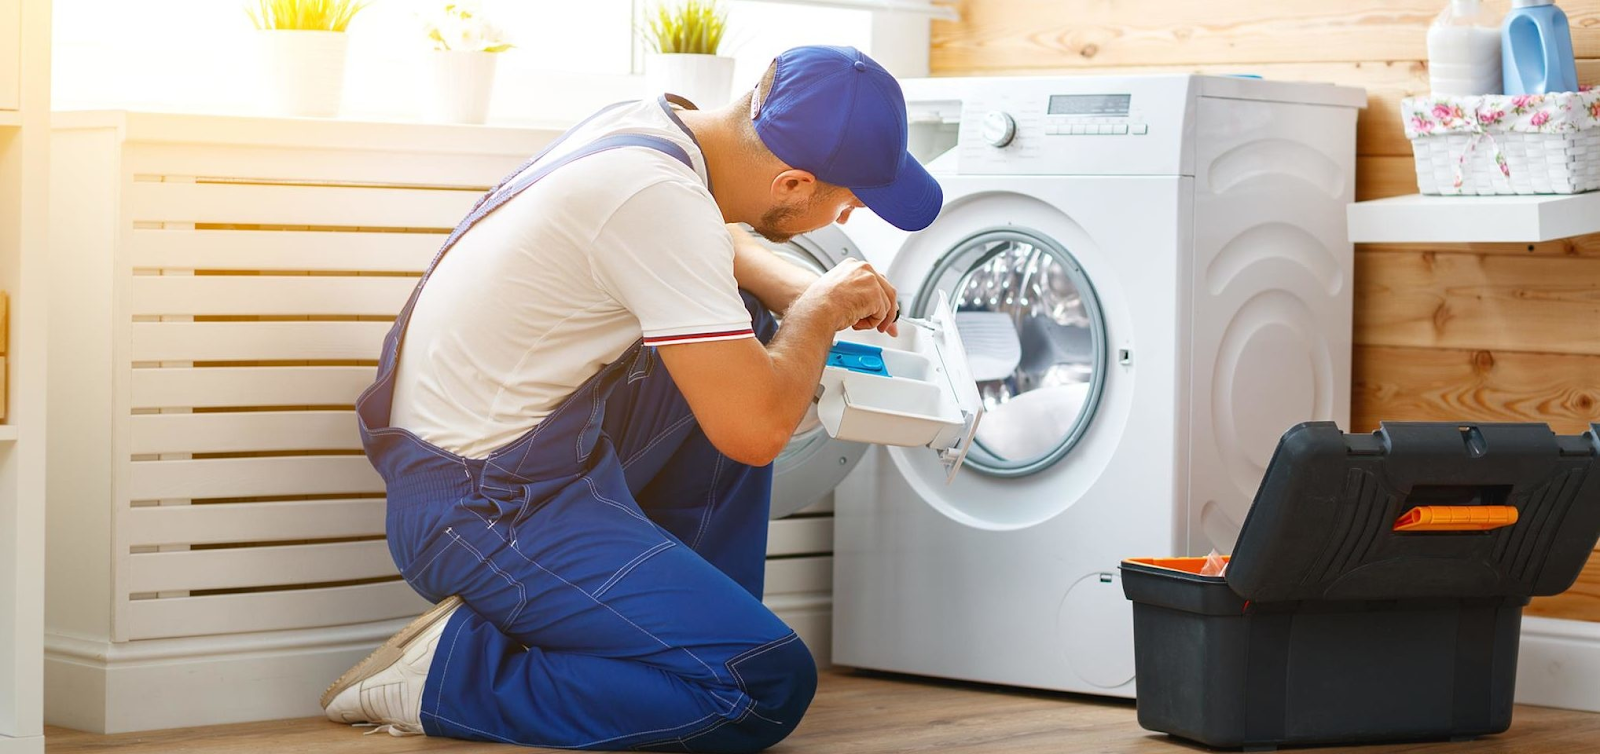 Bảo dưỡng định kỳ máy giặt Electrolux của bạn có thể giúp xác định và khắc phục các sự cố trước khi chúng gây hư hỏng nghiêm trọng cho máy